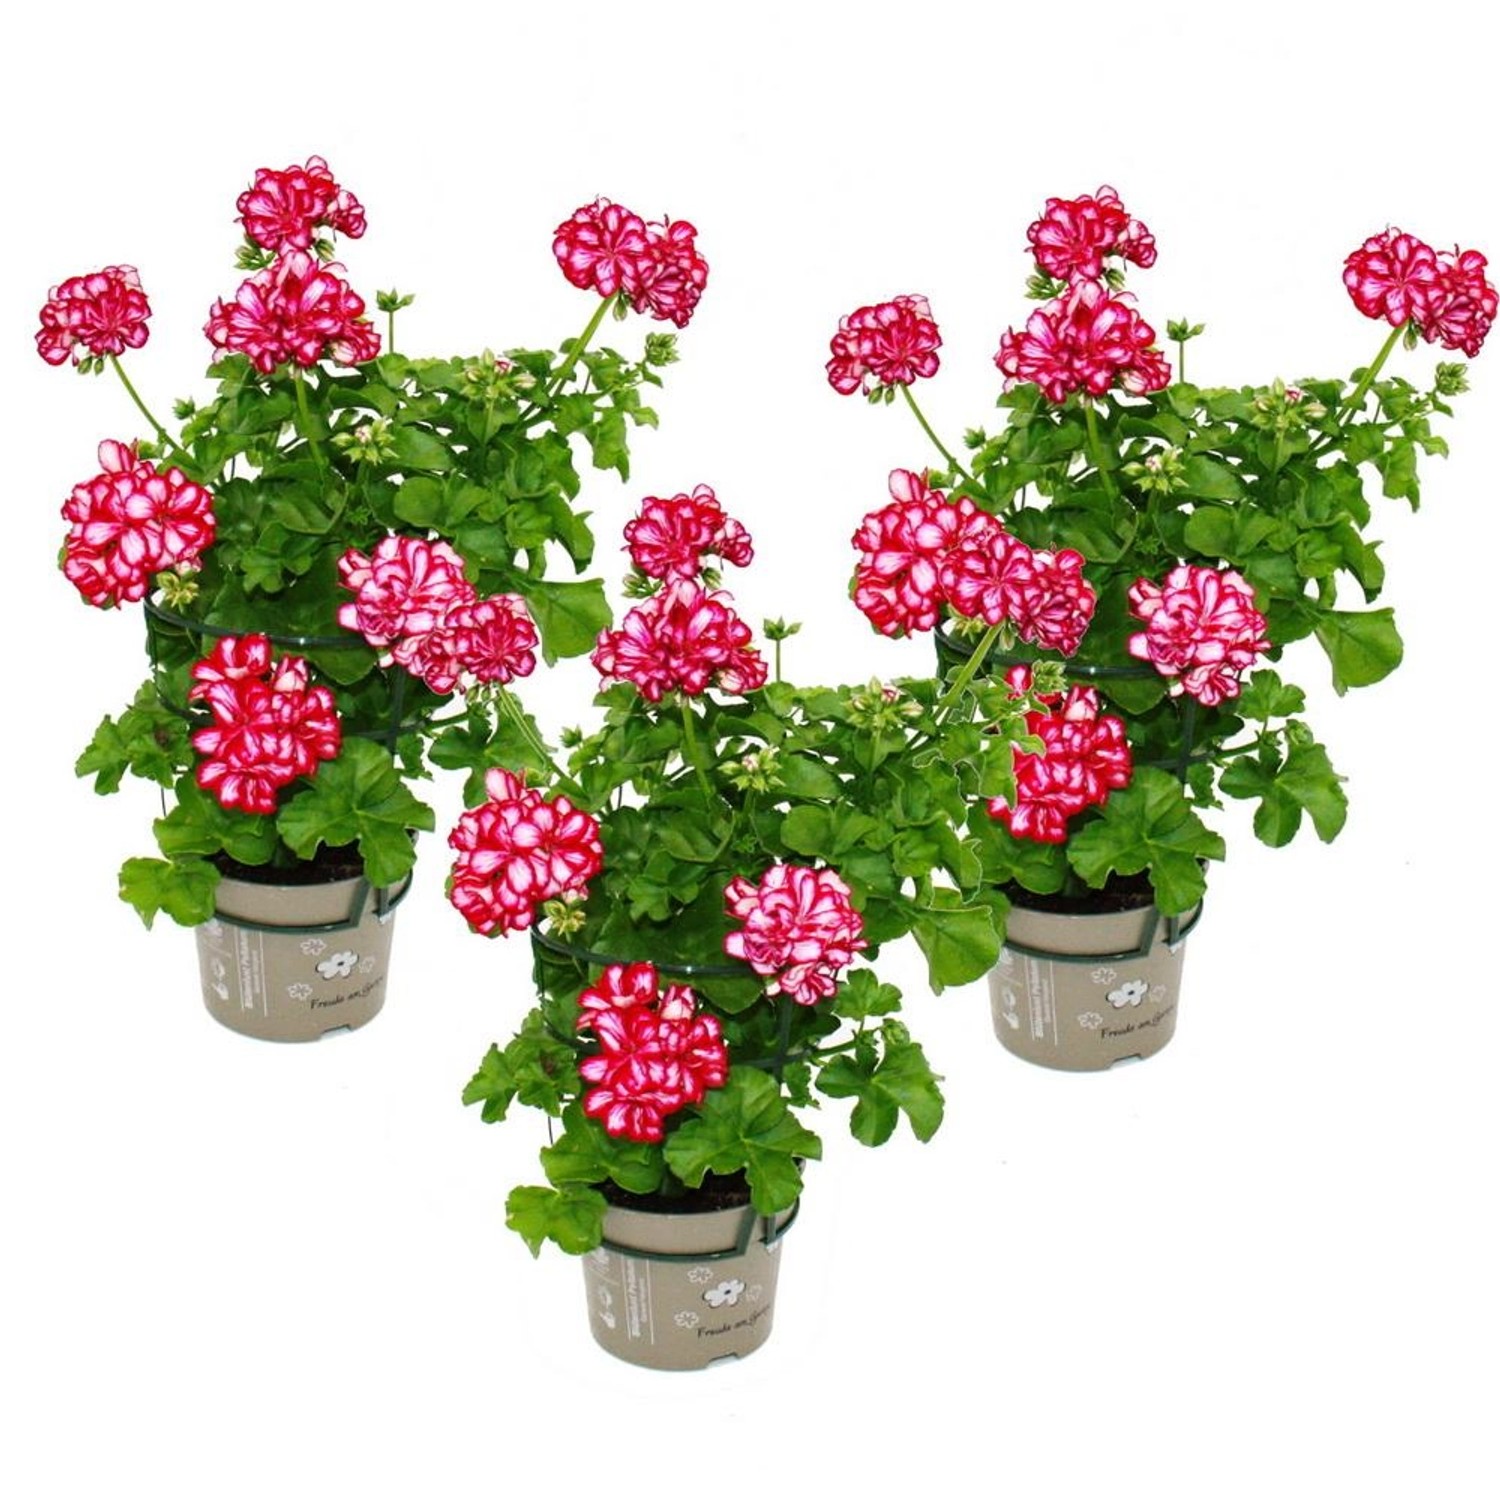 Exotenherz Geranien Hängend Pelargonium Peltatum 12cm Topf Set mit 3 Pflanzen zweifarbig Rot-Weiß